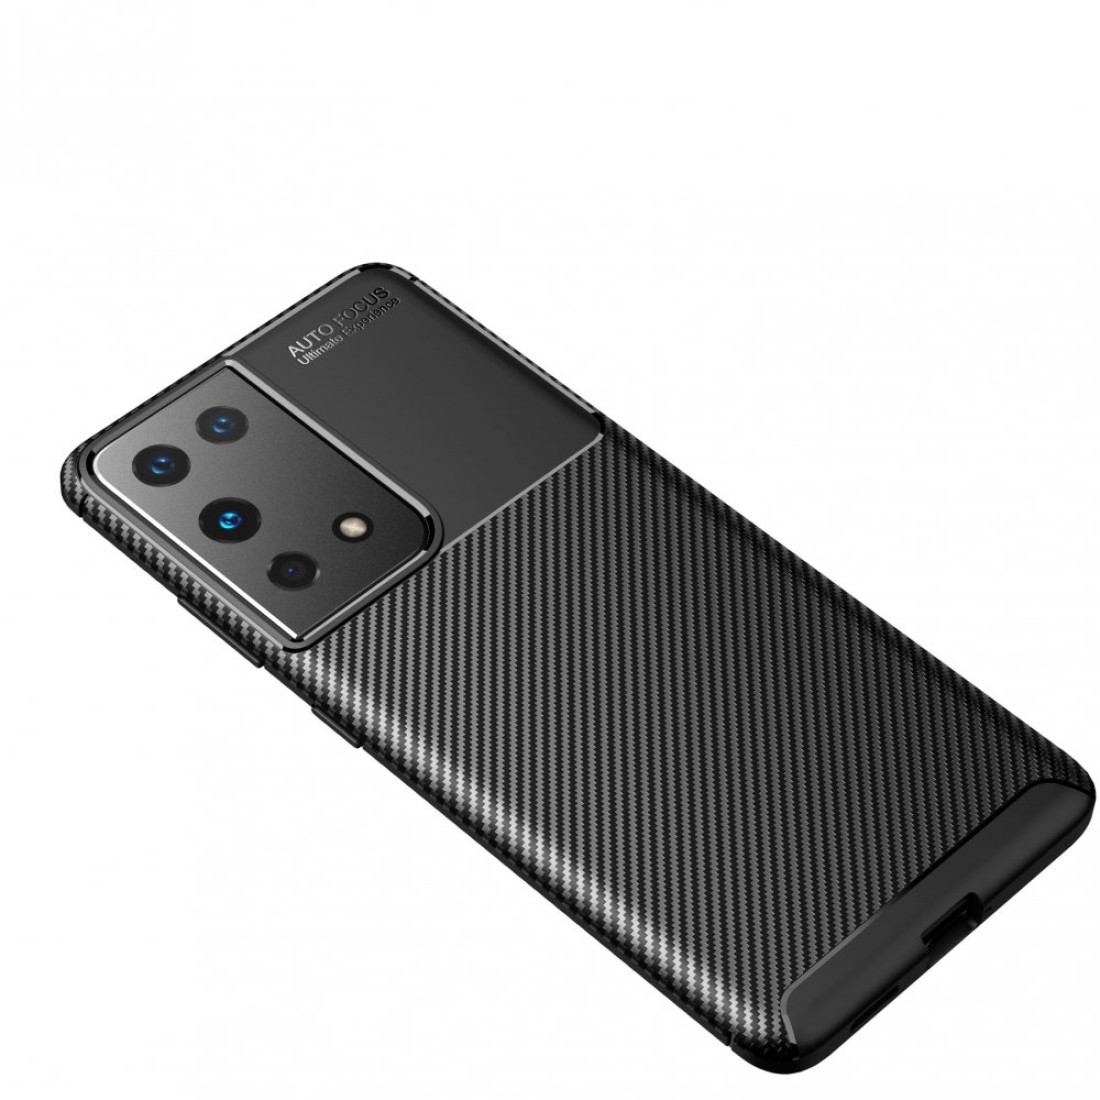 Samsung Galaxy S21 Ultra Kılıf Focus Karbon Silikon - Siyah